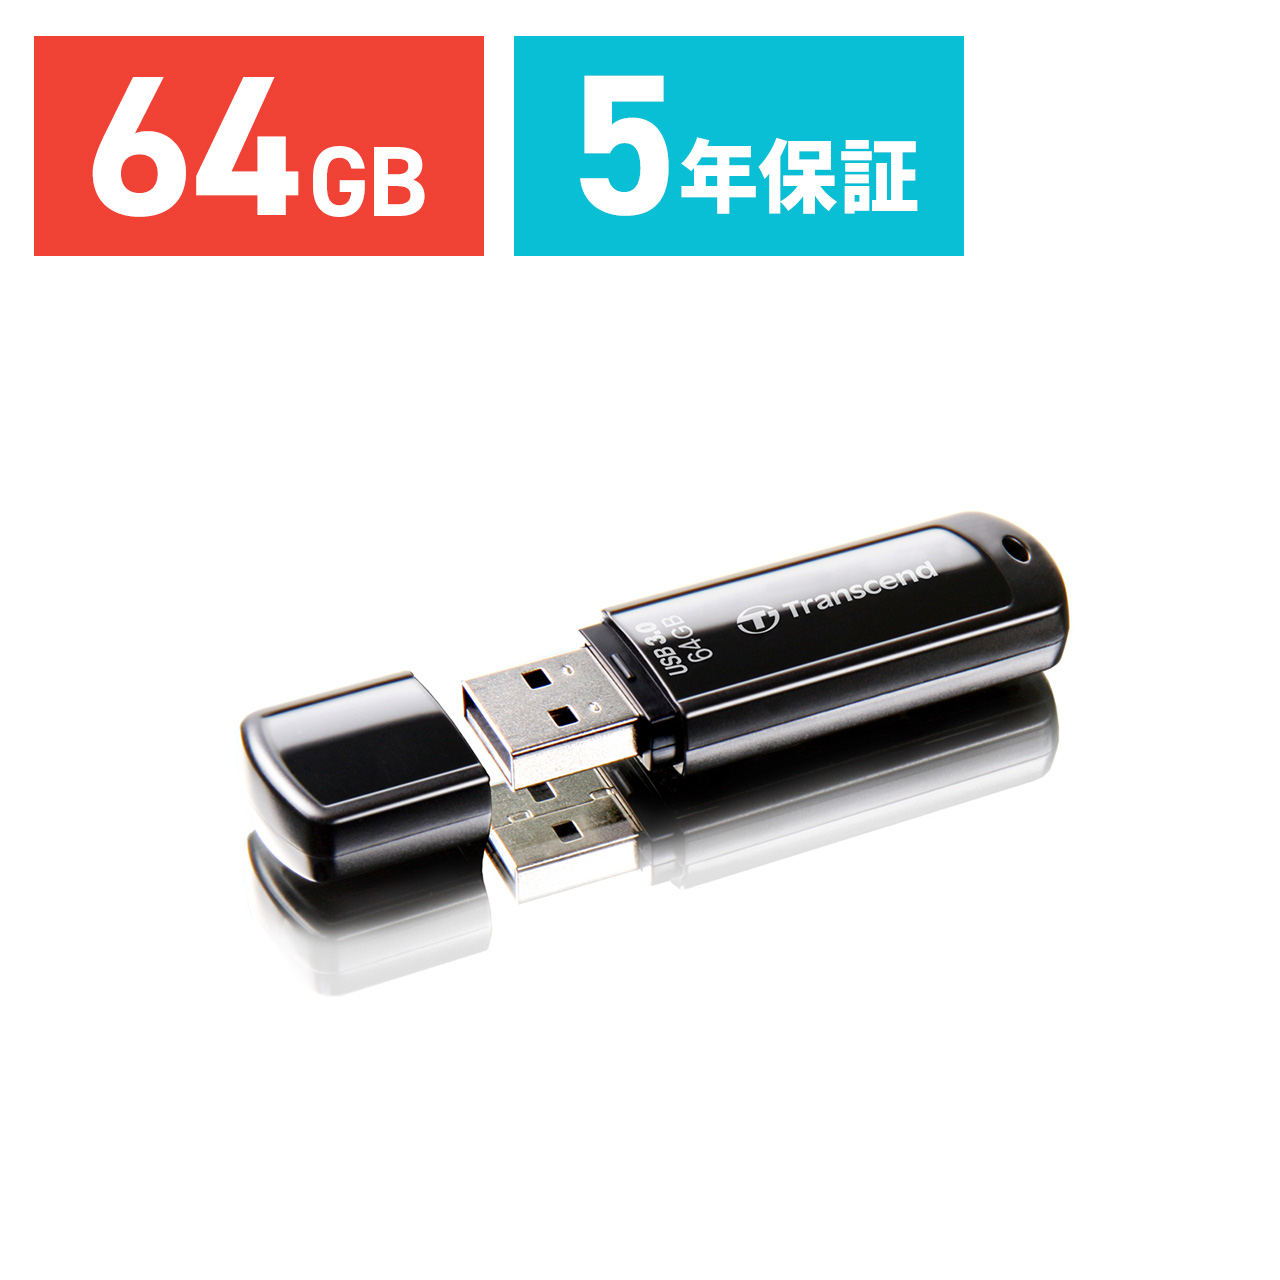 Transcend USBメモリ 64GB USB3.1(Gen1) JetFlash 700 ブラック TS64GJF700  TS64GJF700の販売商品 通販ならサンワダイレクト